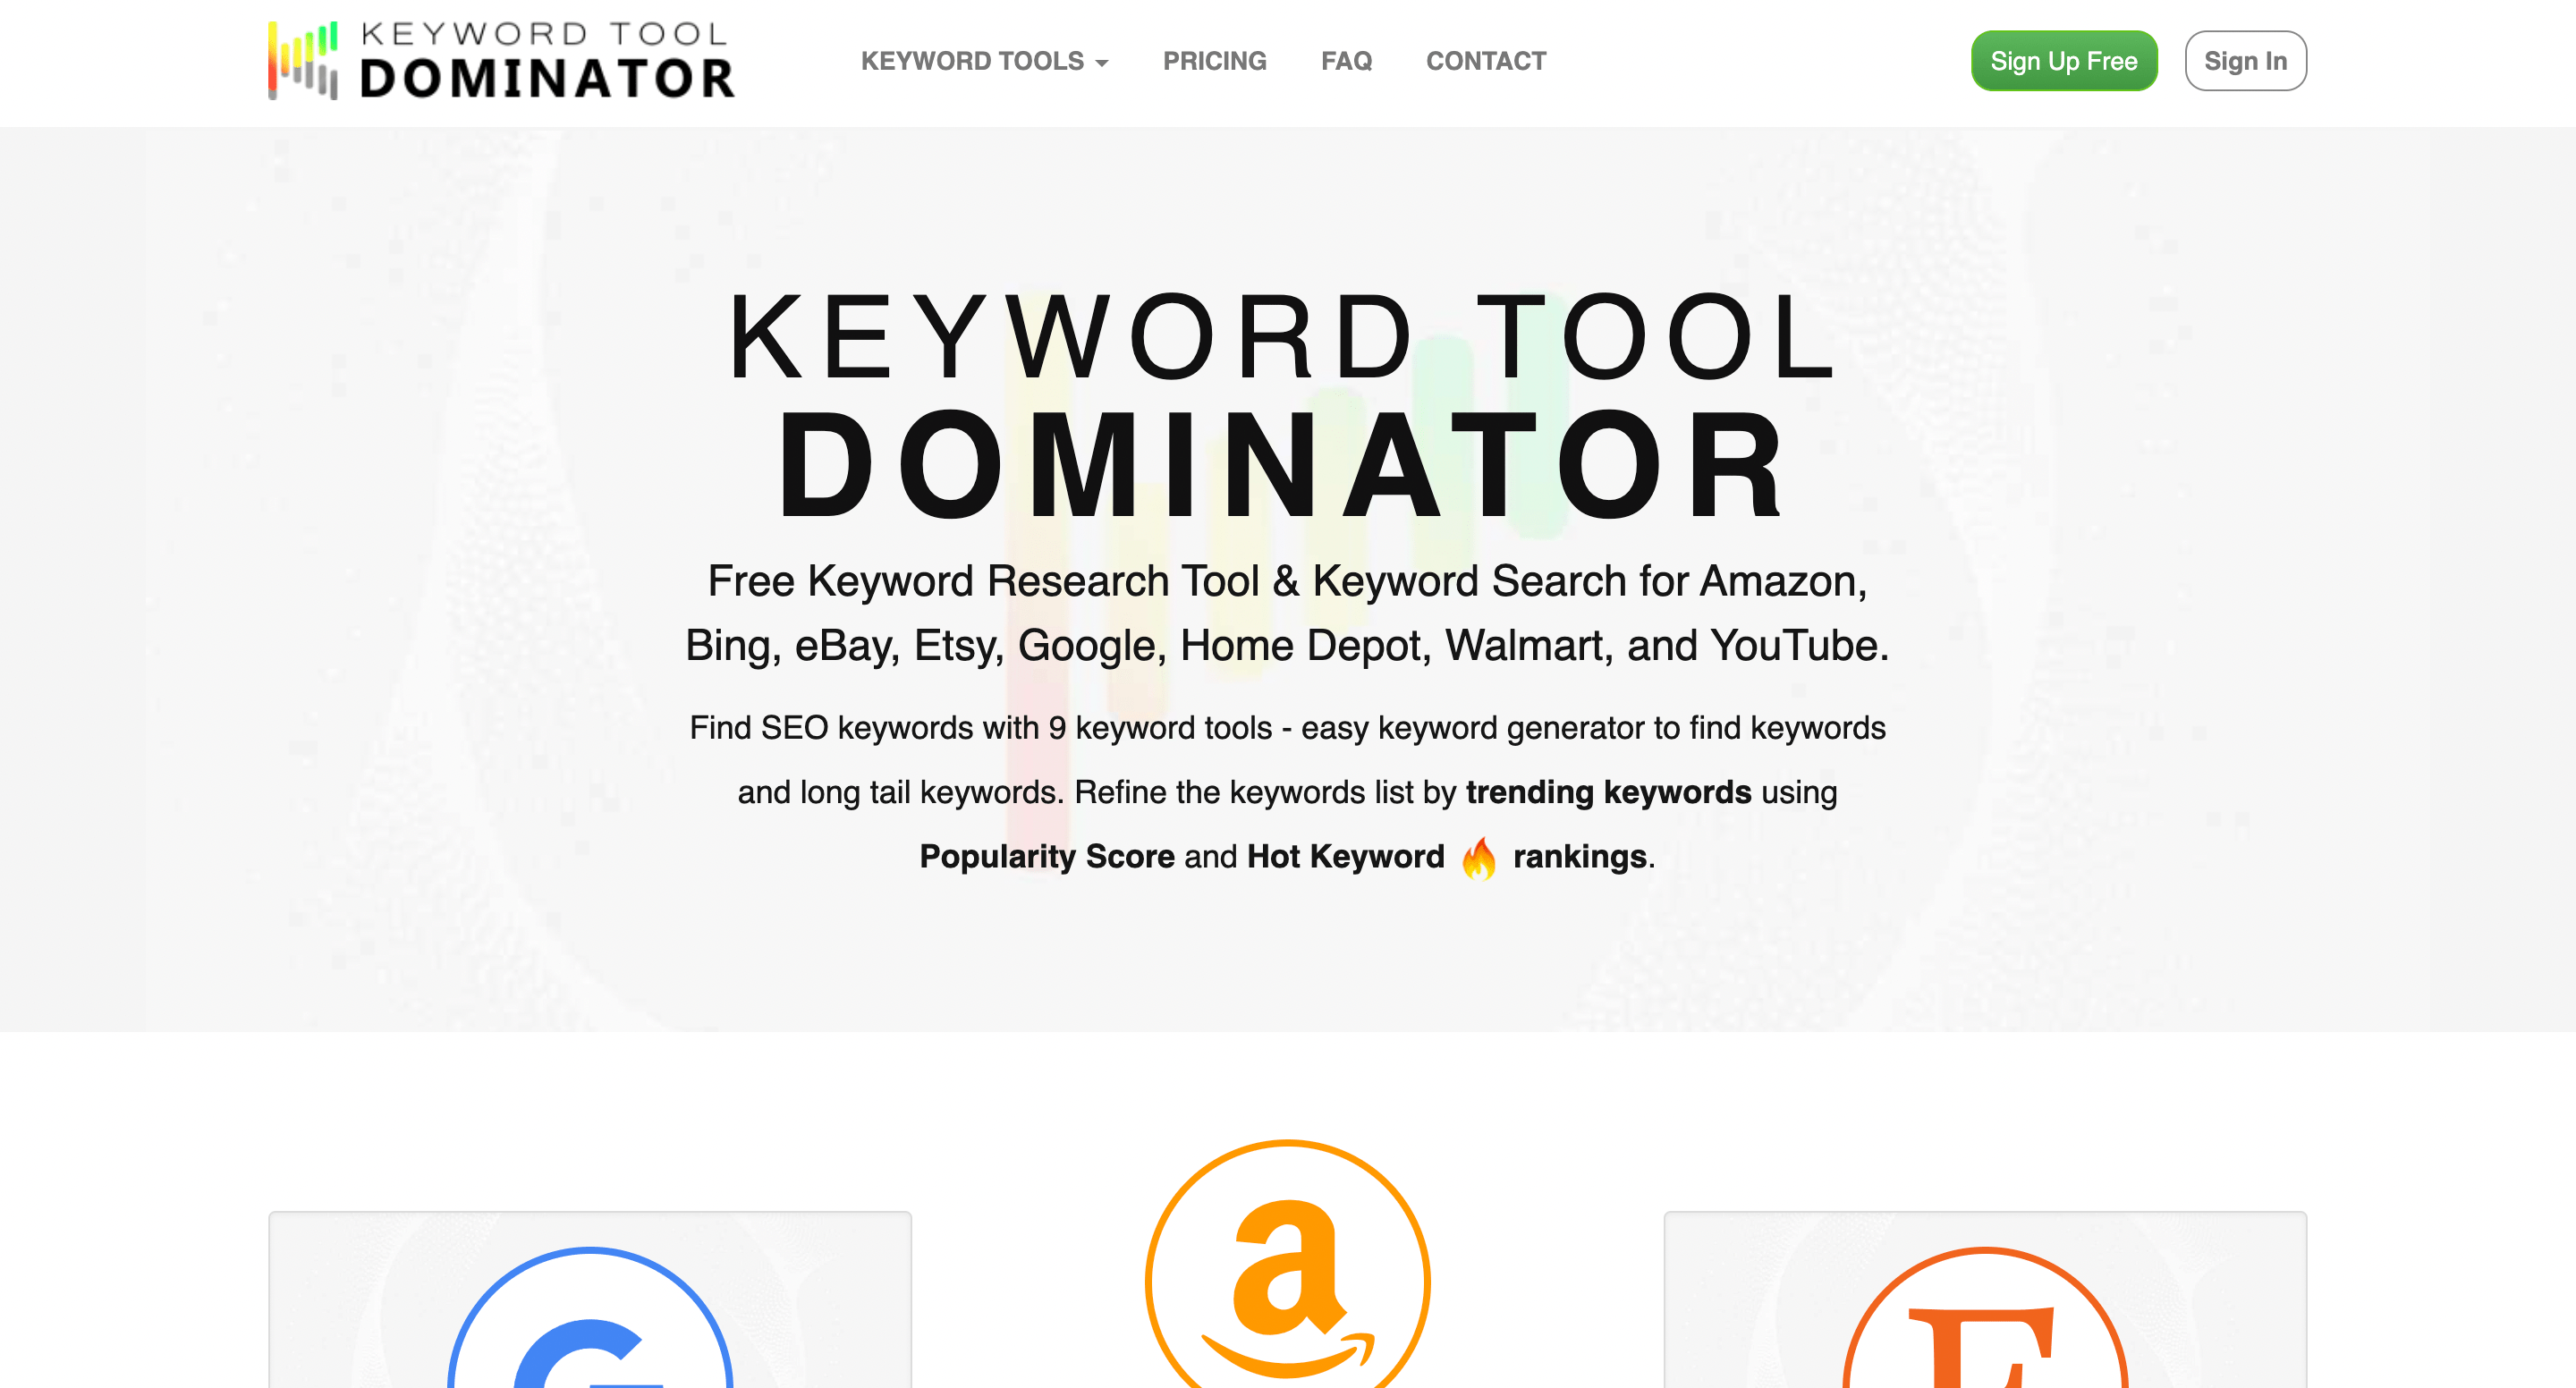 keyword tool dominator